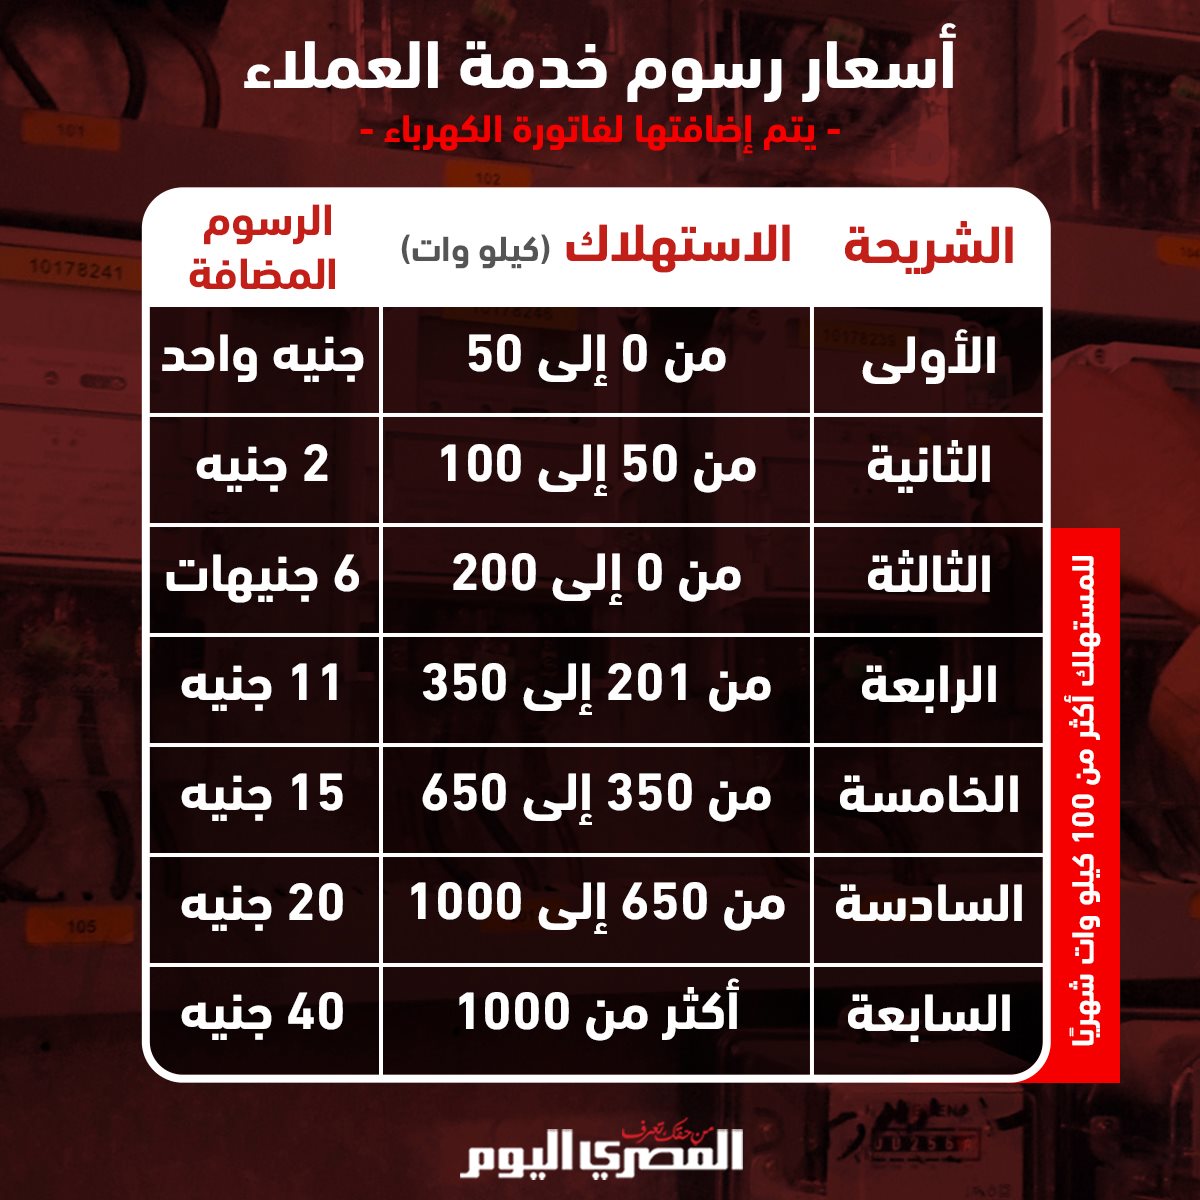 صحيفة المصري اليوم أسعار رسوم خدمة العملاء المضافة على فاتورة 